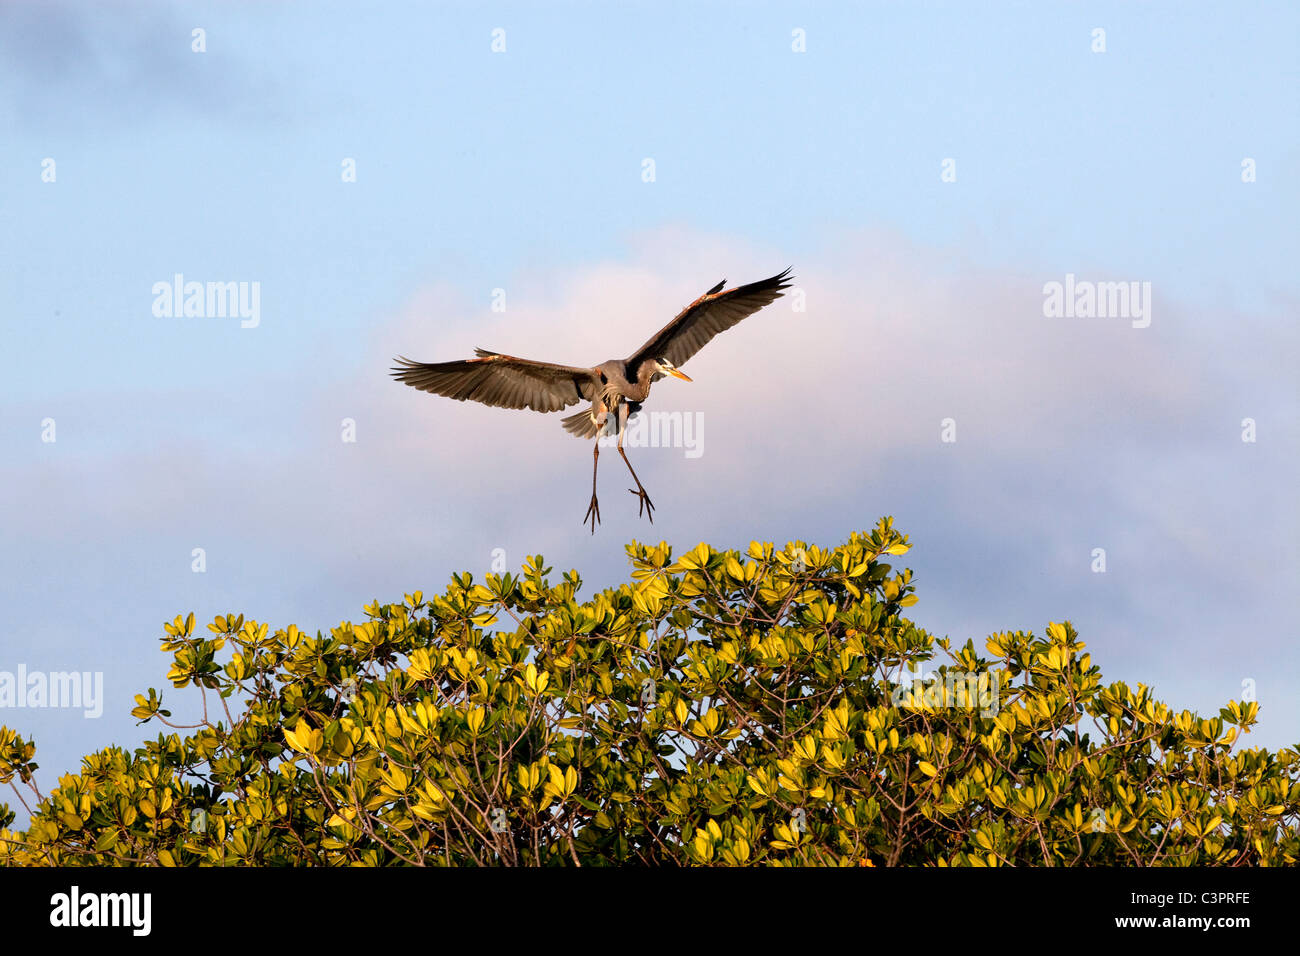 A great blue heron (Ardea herodias) lands in a tree in Cuba. Stock Photo